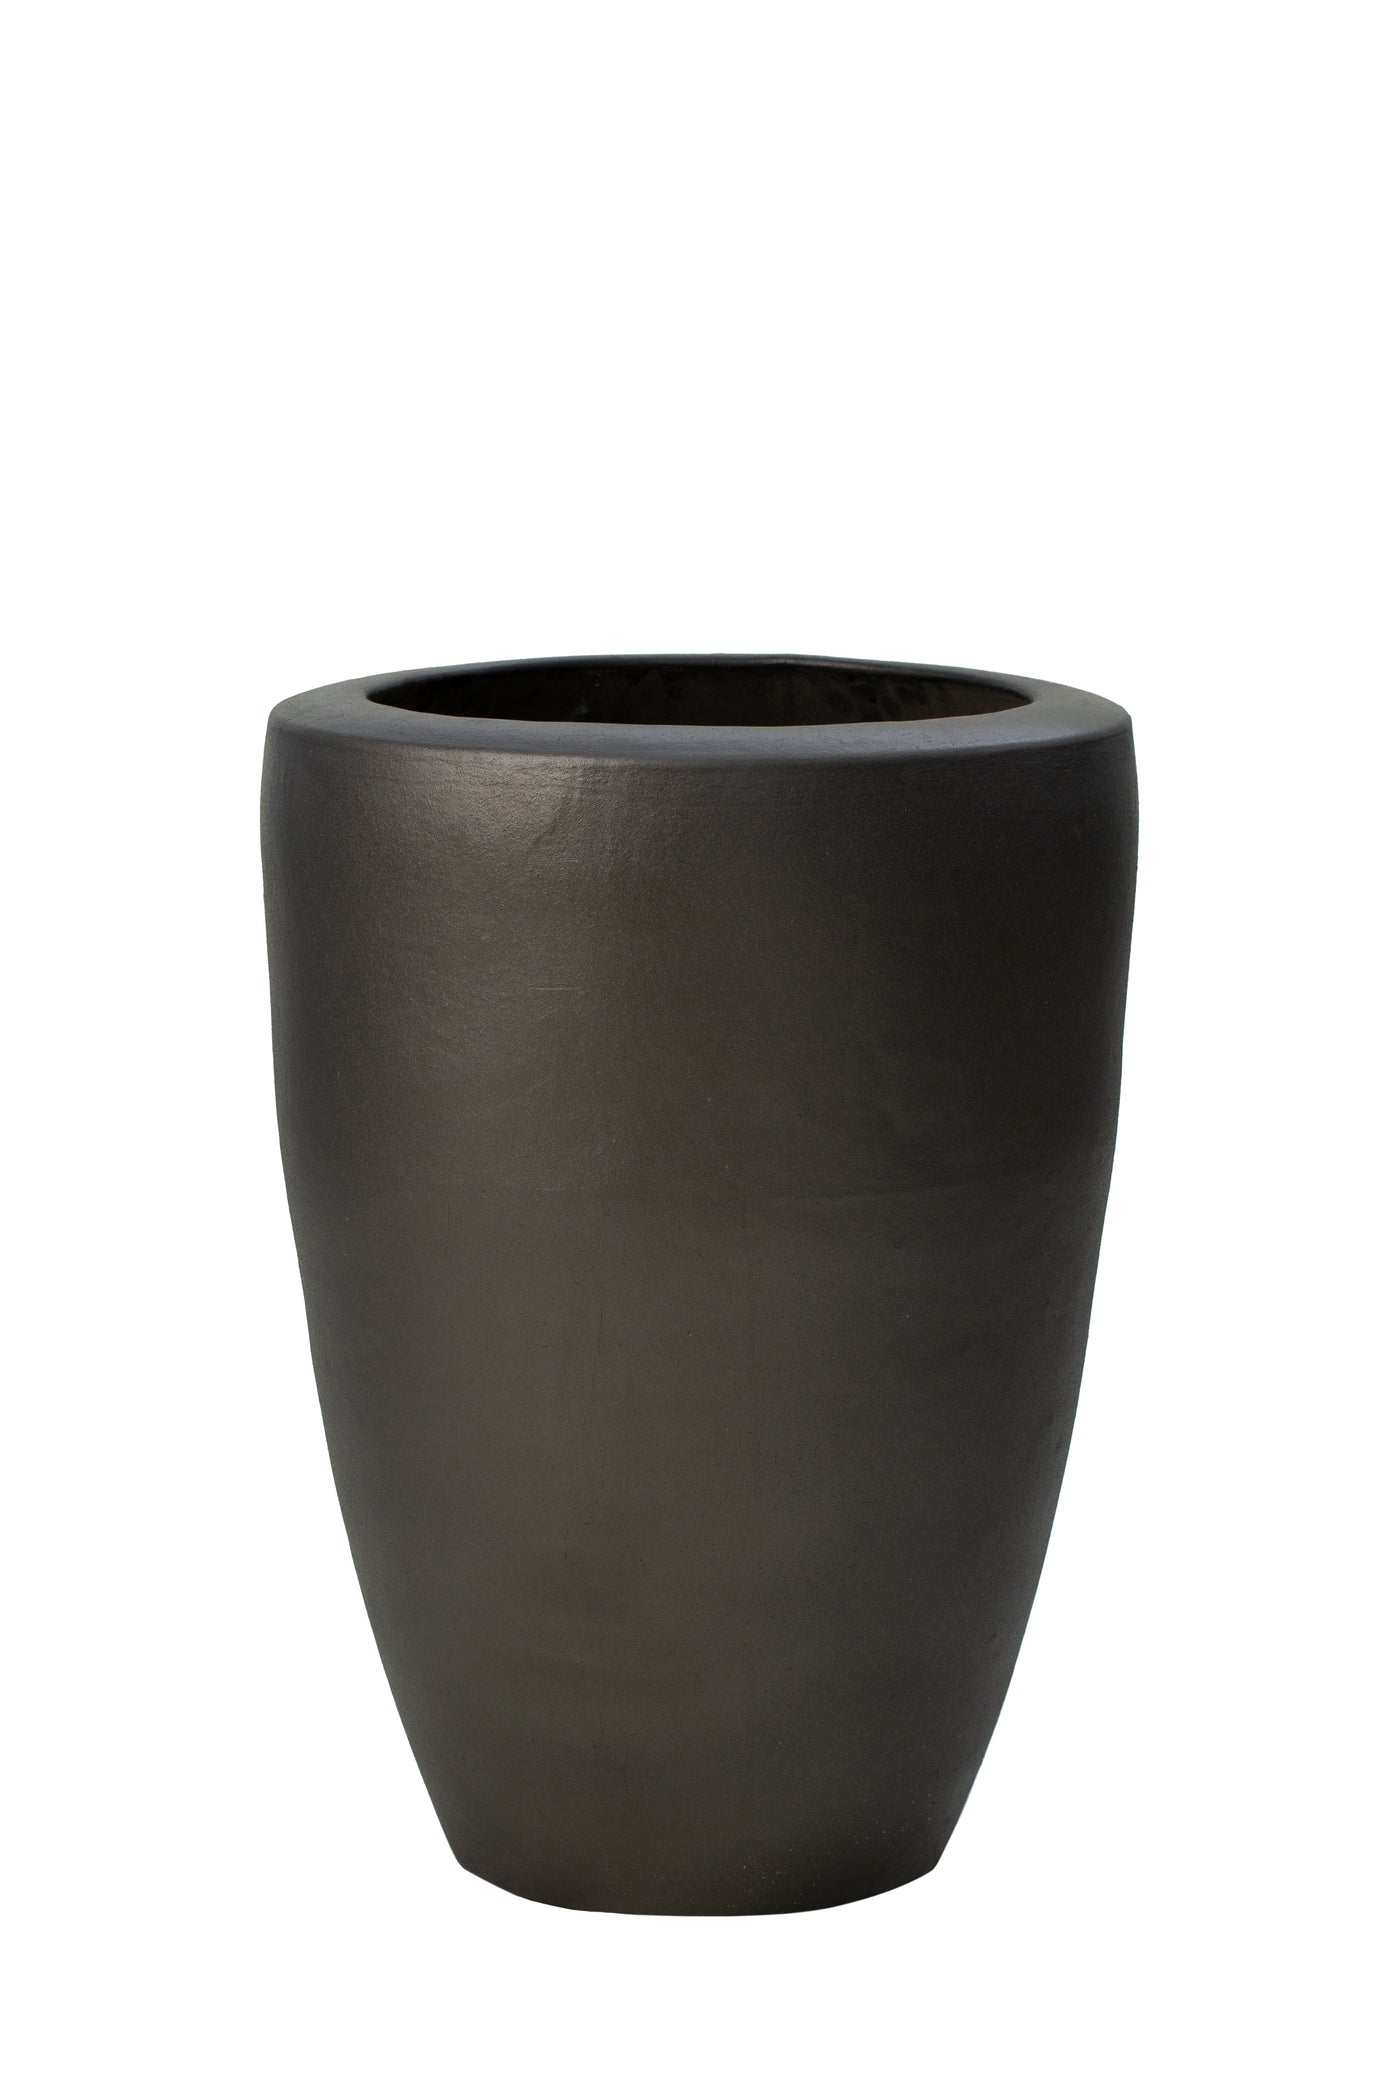 Ghiveci ceramic De Luxe Partner 55x75cm antracit mat